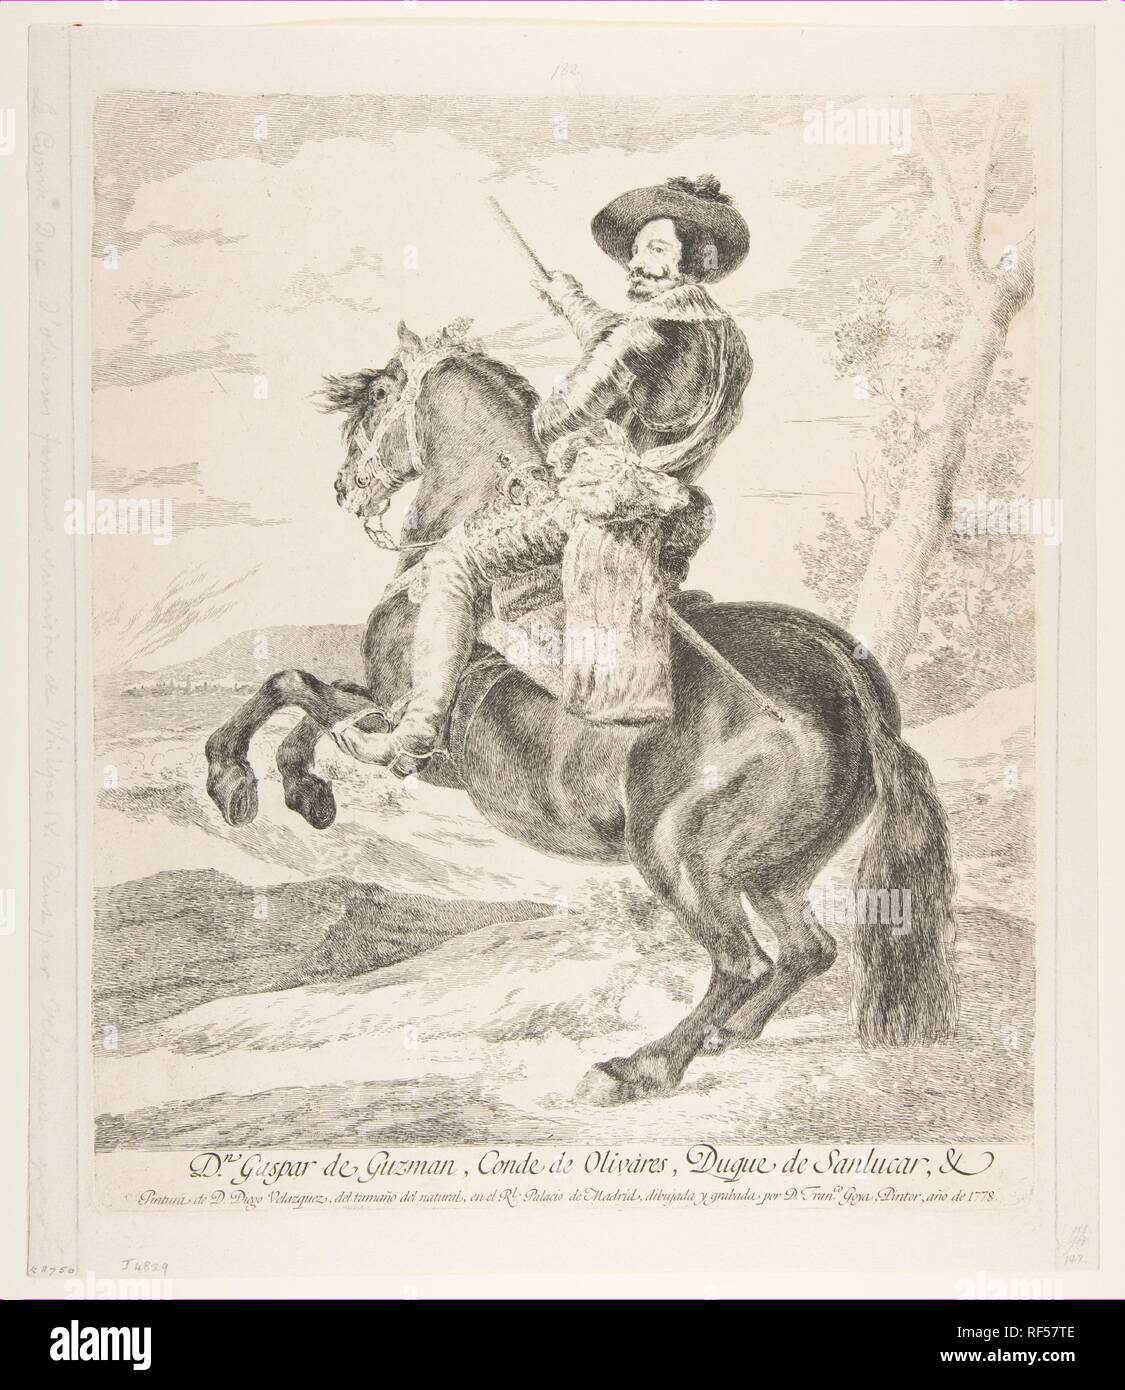 Gaspar de Guzmán, comte d'Olivares à cheval, après Velázquez. Artiste : Goya (Francisco de Goya y Lucientes (Fuendetodos) espagnol, 1746-1828 Bordeaux) ; Après Velázquez (Diego Rodríguez de Silva y Velázquez (Séville, Espagne) Madrid 1599-1660). Dimensions : Plateau : 14 5/8 x 12 3/8 in. (37,2 × 31,4 cm) feuille : 16 × 5/16 14 1/8 in. (41,4 × 35,8 cm). Sitter : Gaspar de Guzmán, comte d'Olivares et duc de Sanlucar (Espagnol, 1587-1645). Date : 1778. Musée : Metropolitan Museum of Art, New York, USA. Banque D'Images